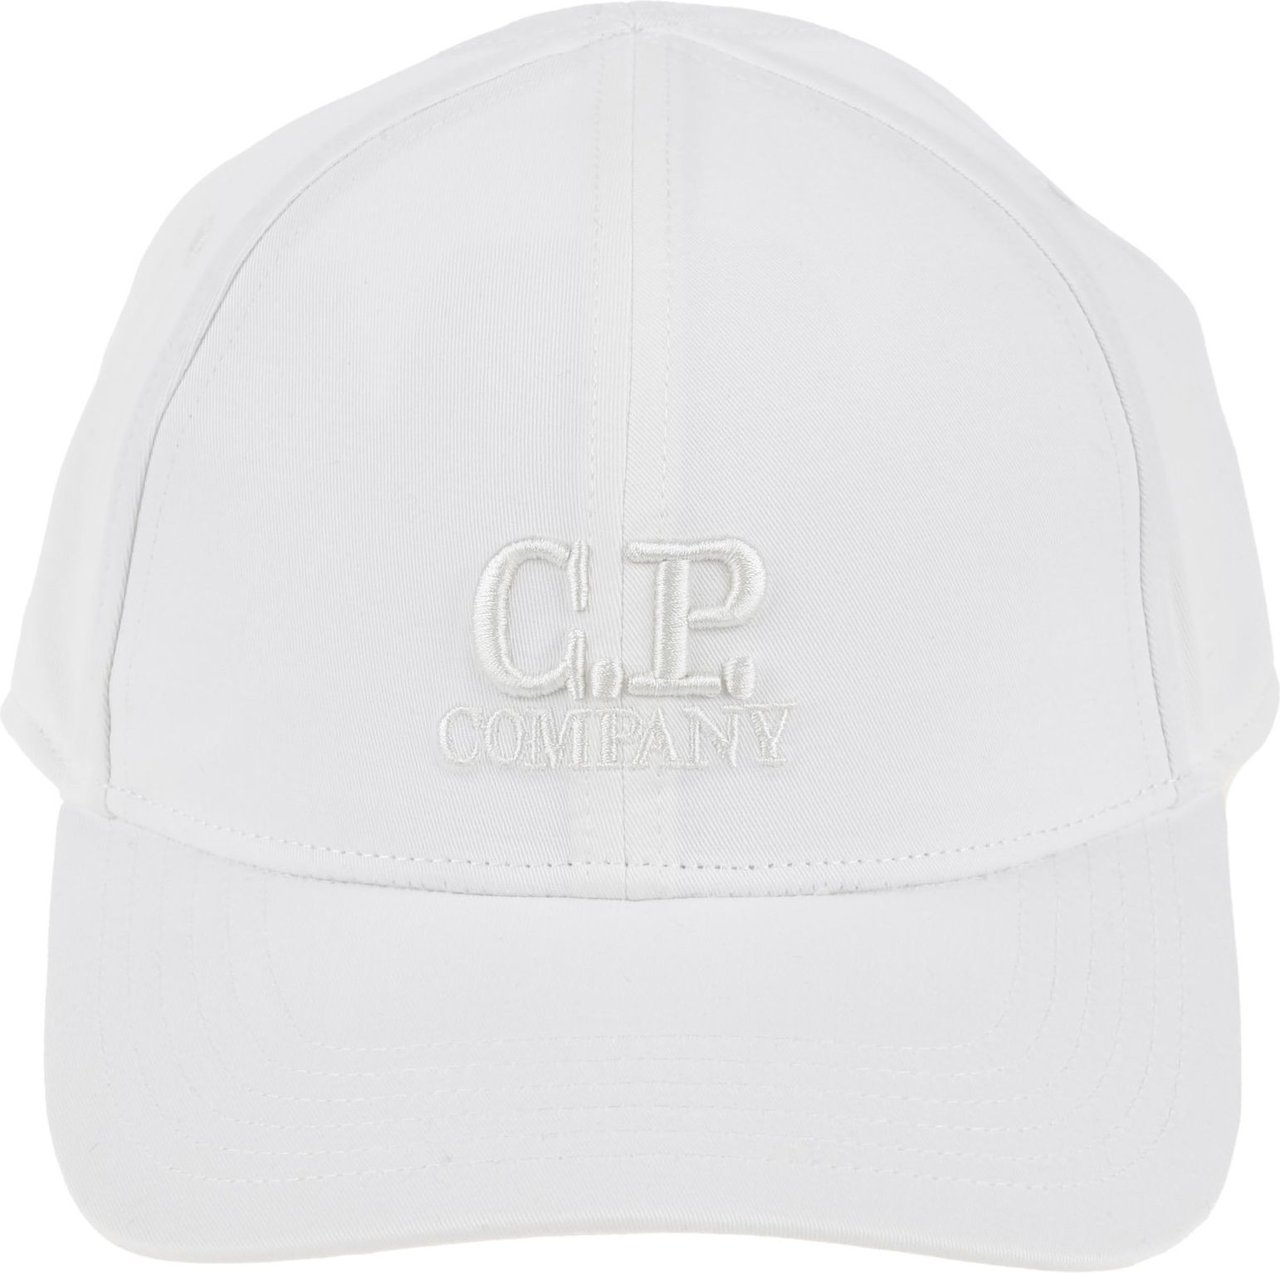 CP Company Cpcompany Accessories White Wit